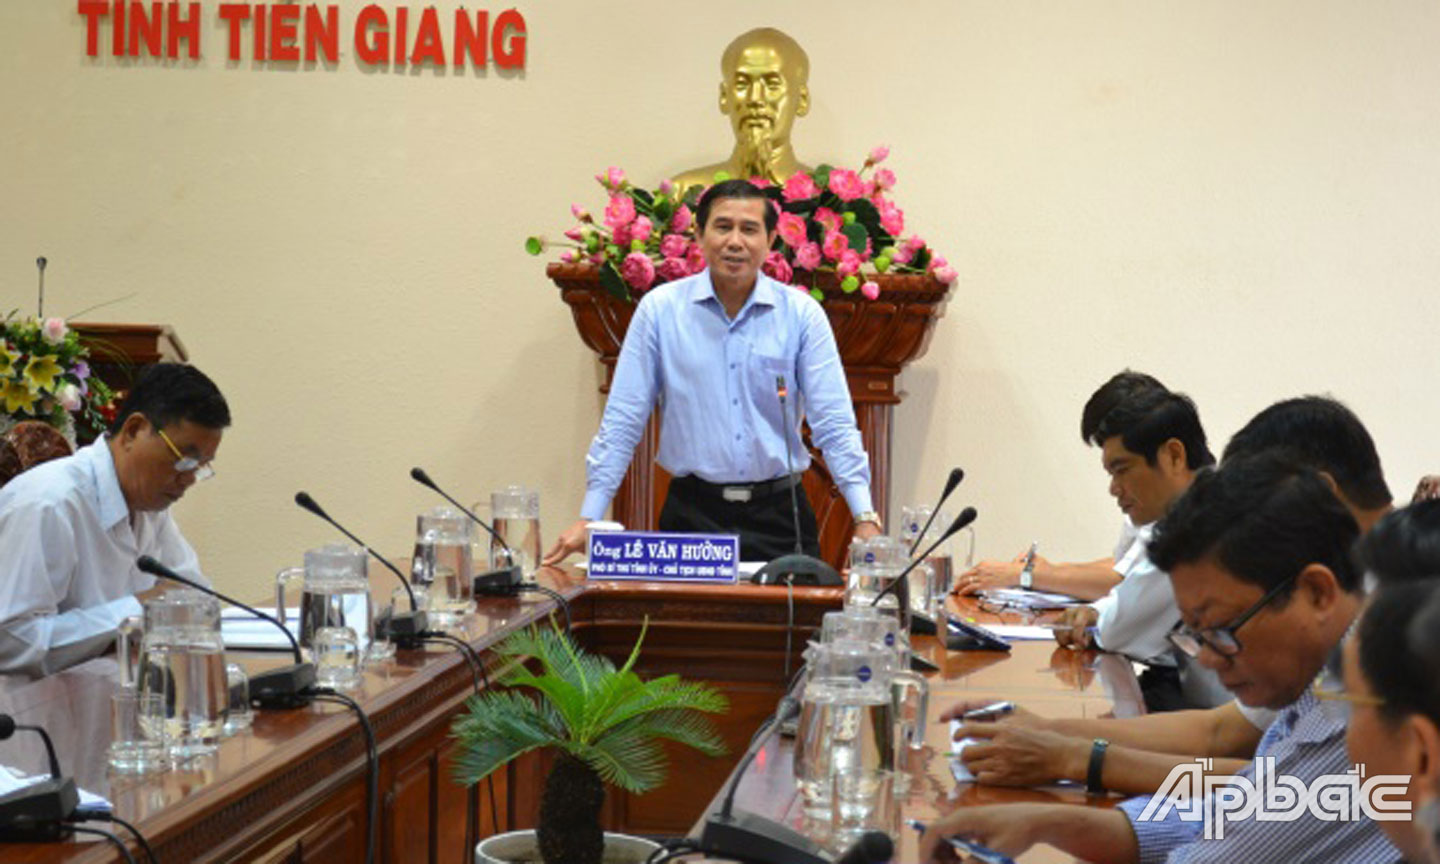 Đồng chí Lê Văn Hưởng kết luận vụ việc của ông Xuân.